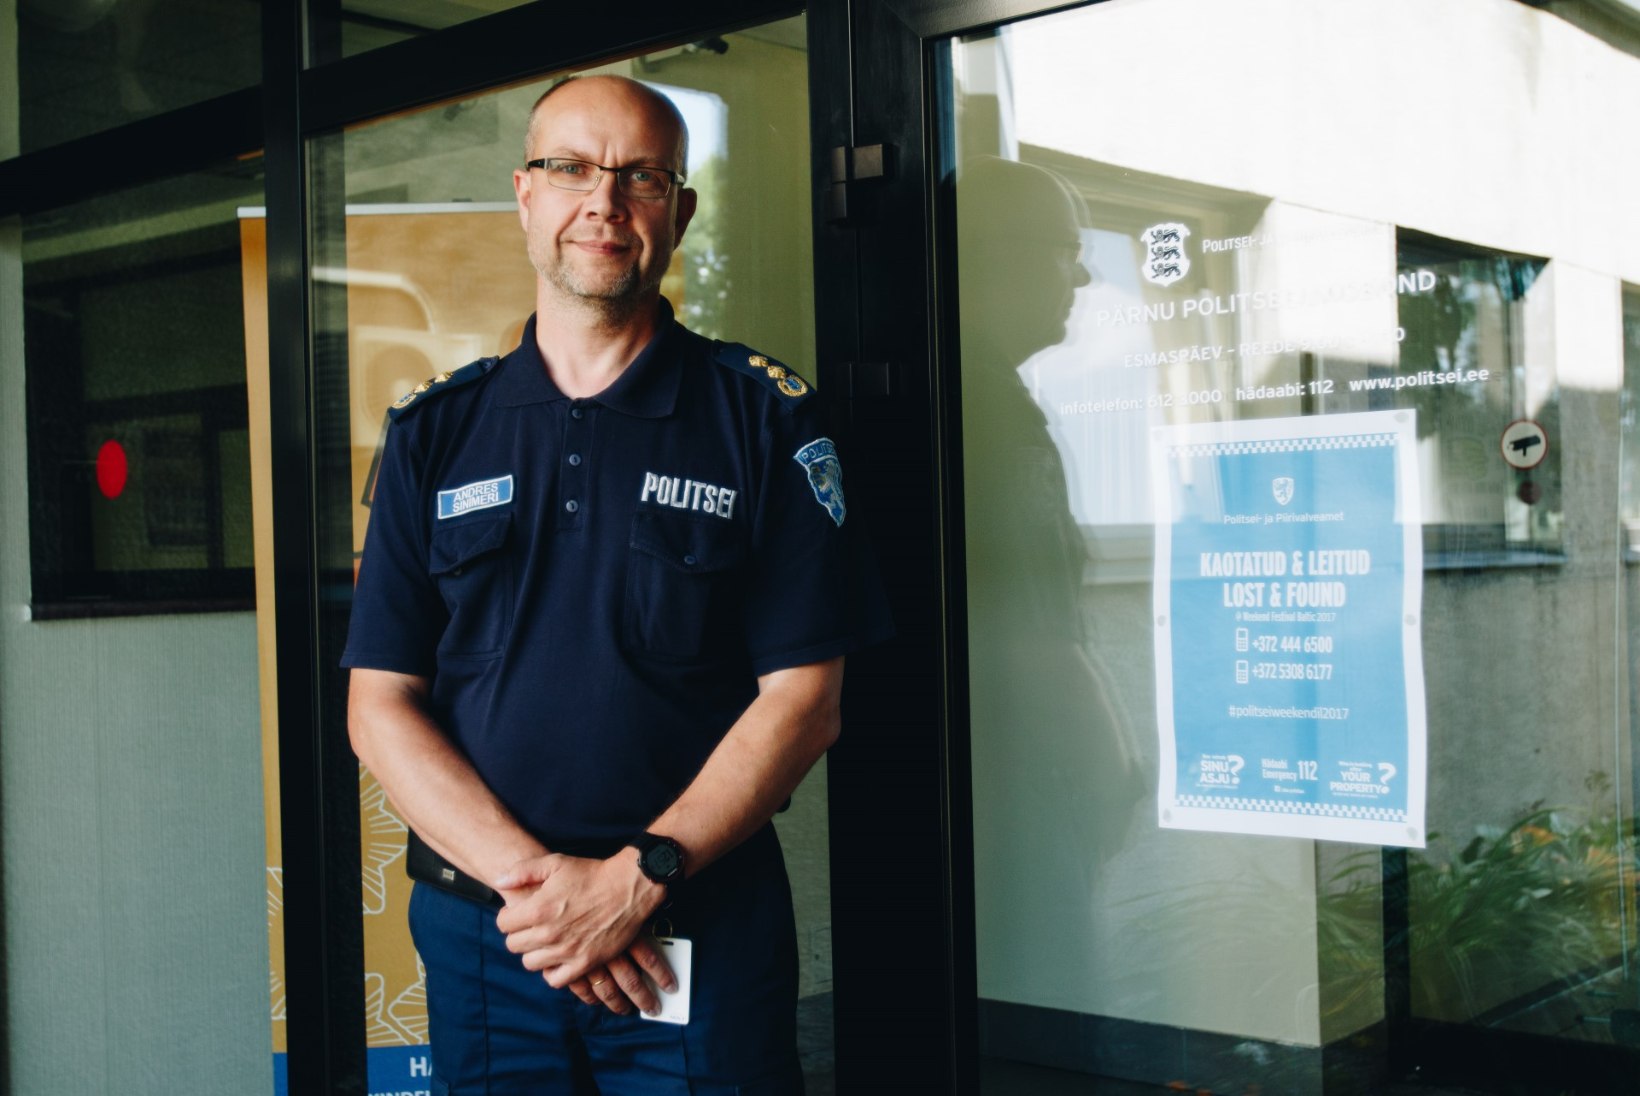 ÕHTULEHE VIDEO | Pärnu politsei on pidanud tegelema mõne kakluse ja suure hulga narkootikumidega